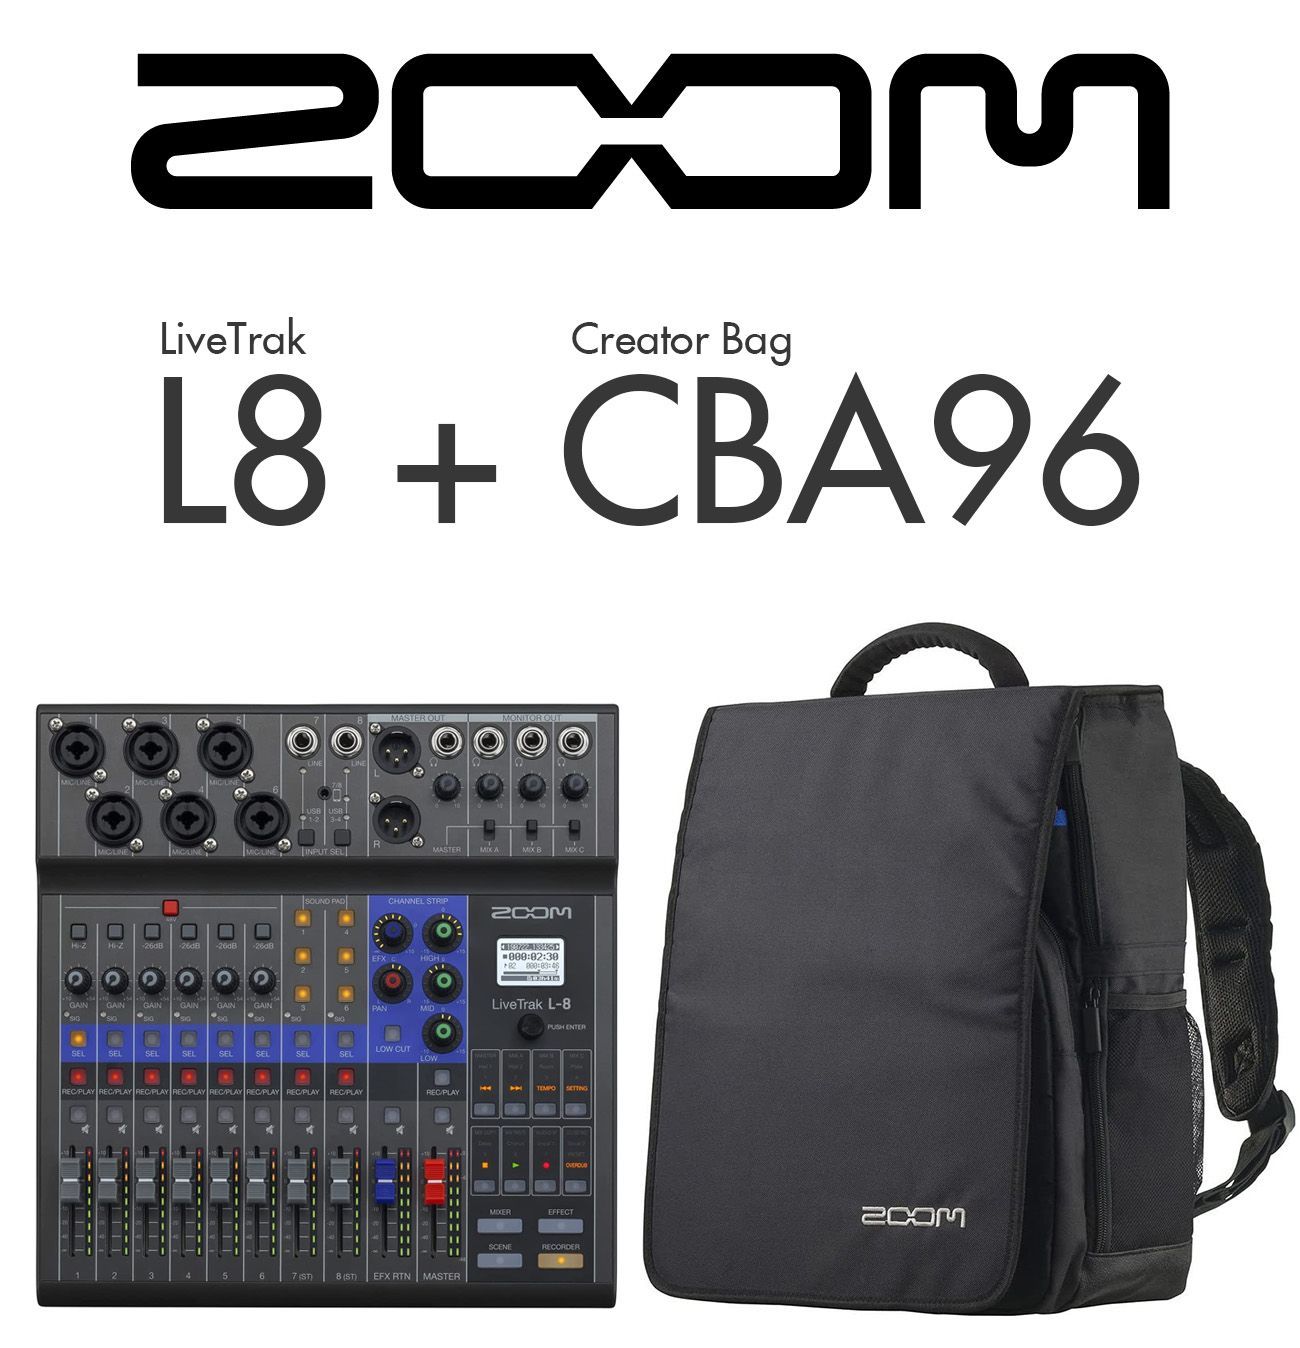 ZOOM L-8 + CBA96